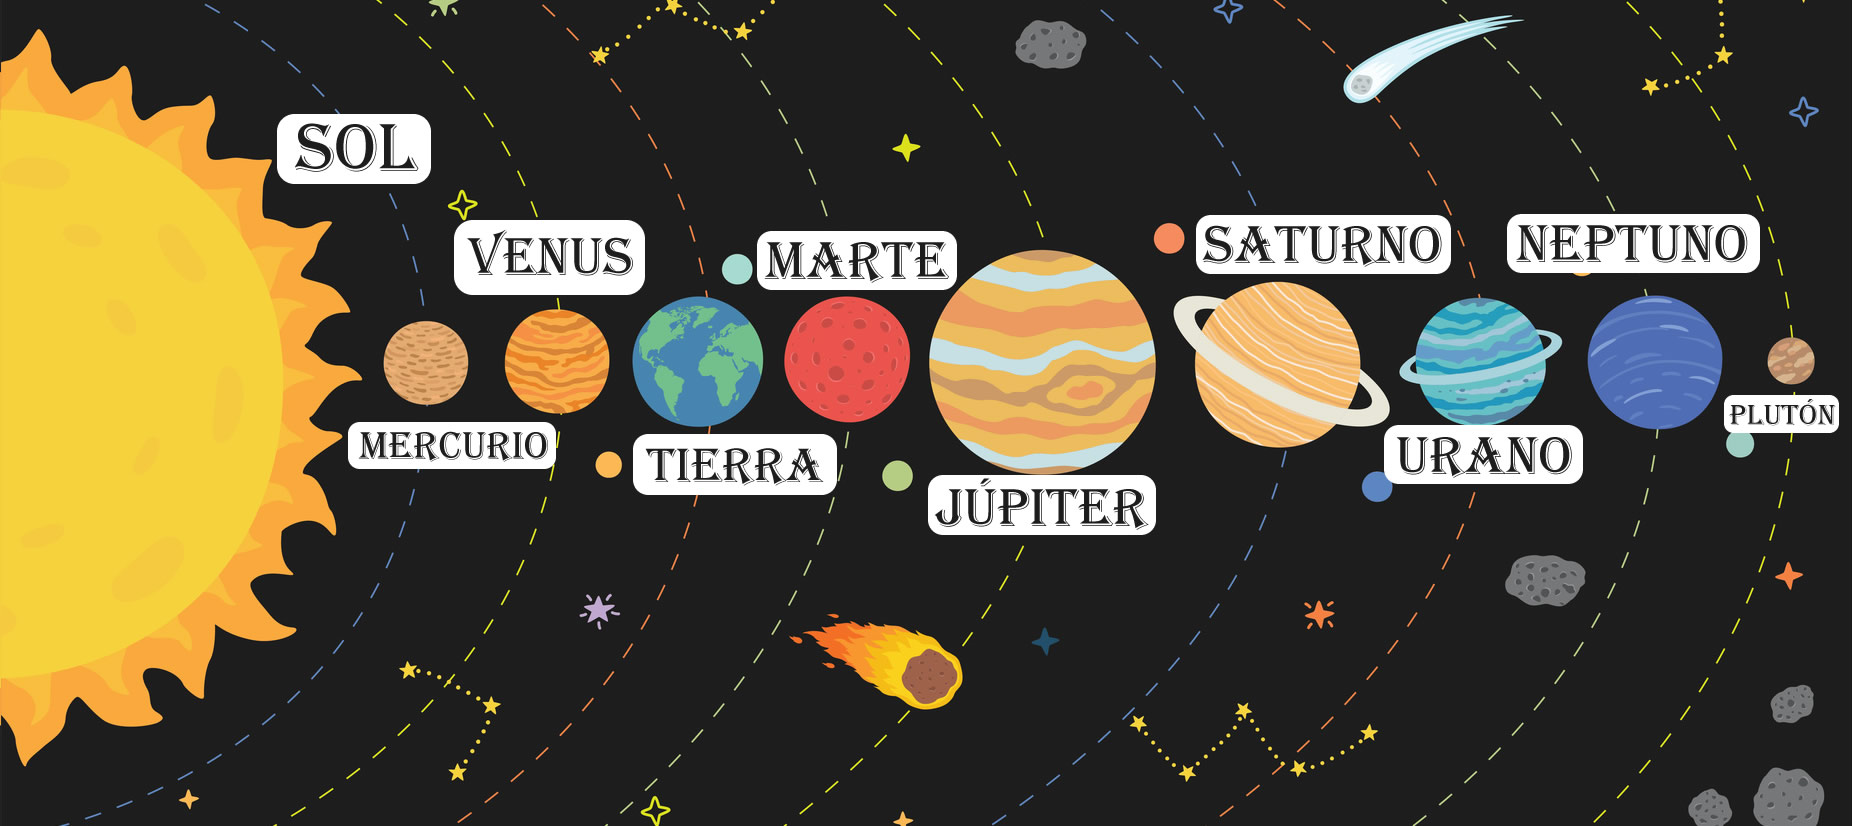 Un Diagrama De Los Planetas De Nuestro Sistema Solar Con Los Nombres De ...